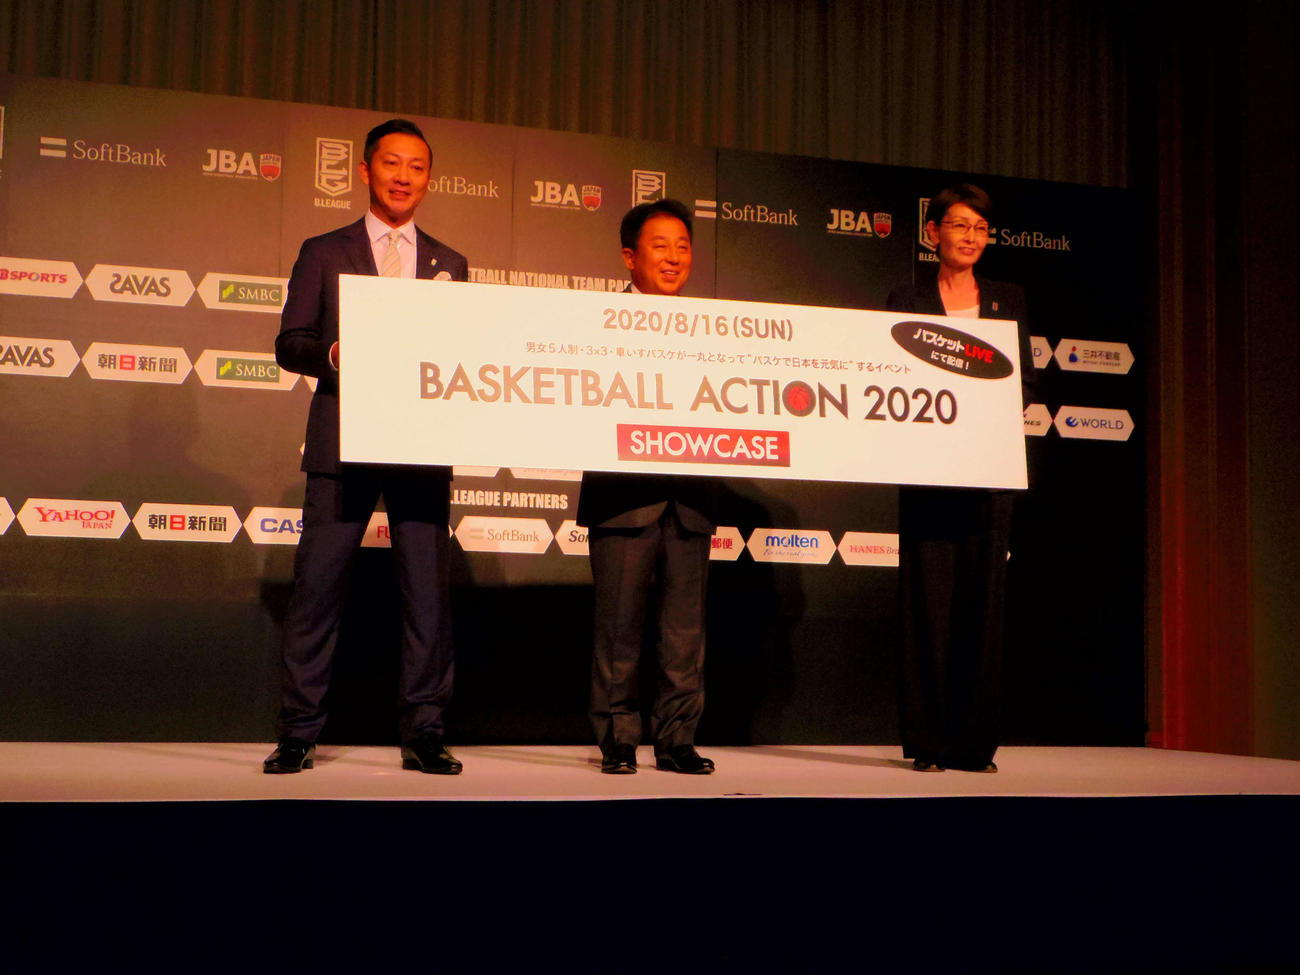 会見に出席した日本バスケットボール協会の三屋会長（右端）、ソフトバンク社の榛葉副社長、Bリーグ島田チェアマン（左端）（撮影・奥岡幹浩）